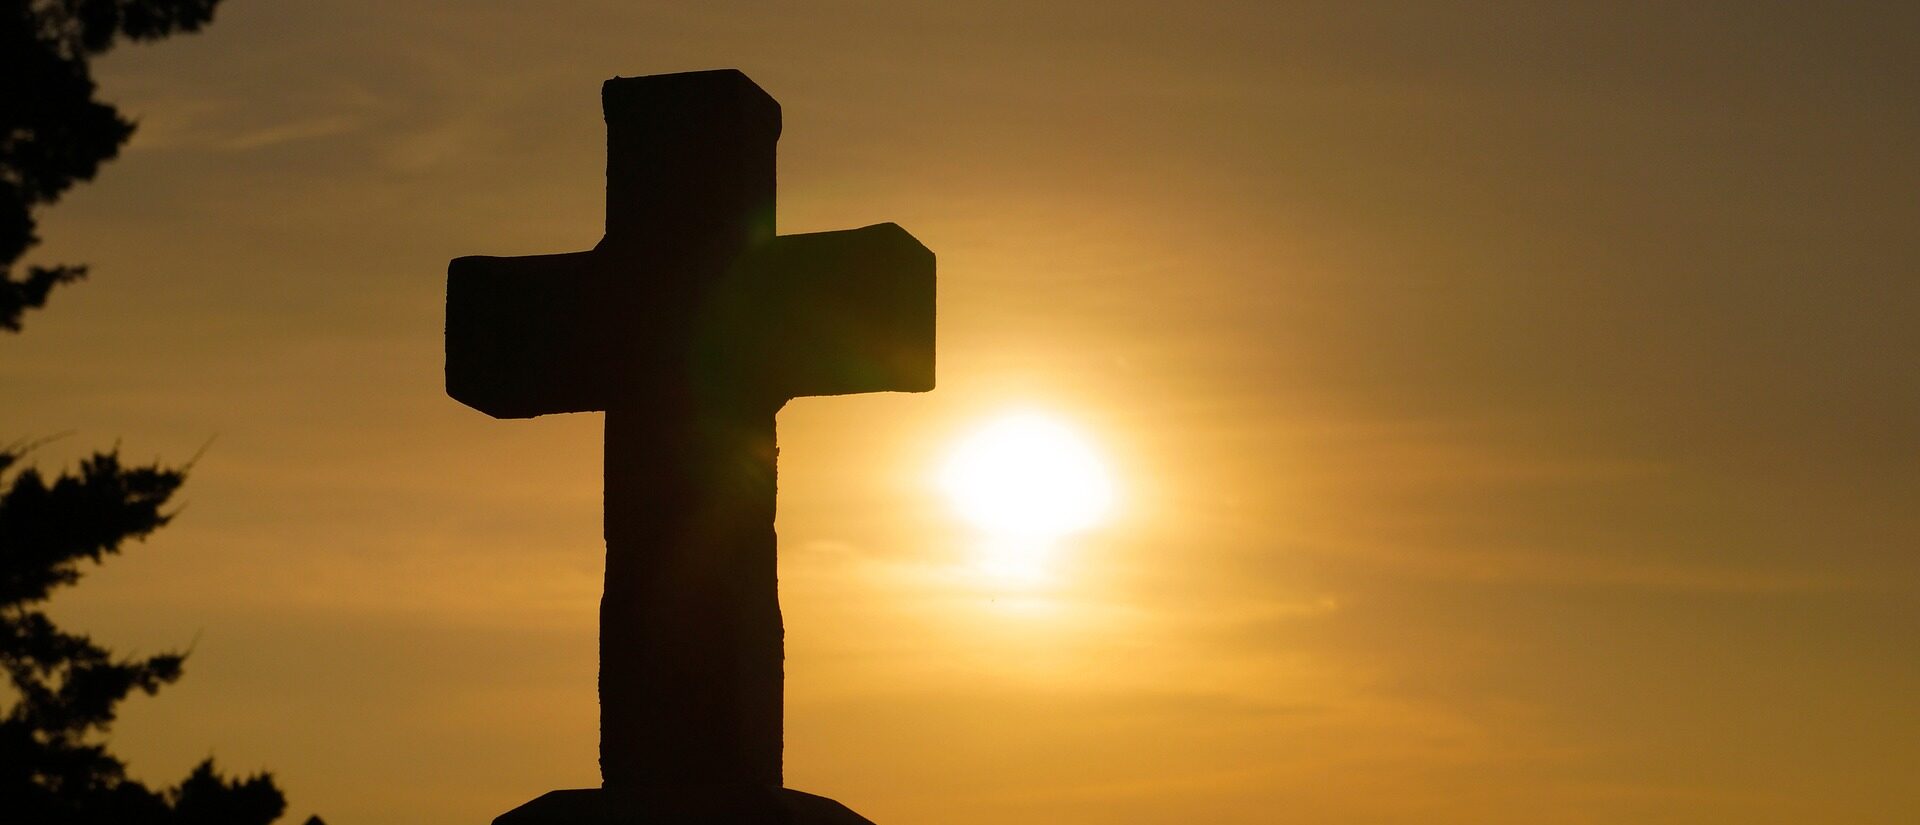 Le pape espère une nouvelle aube pour la chrétienté (Pixabay.com)